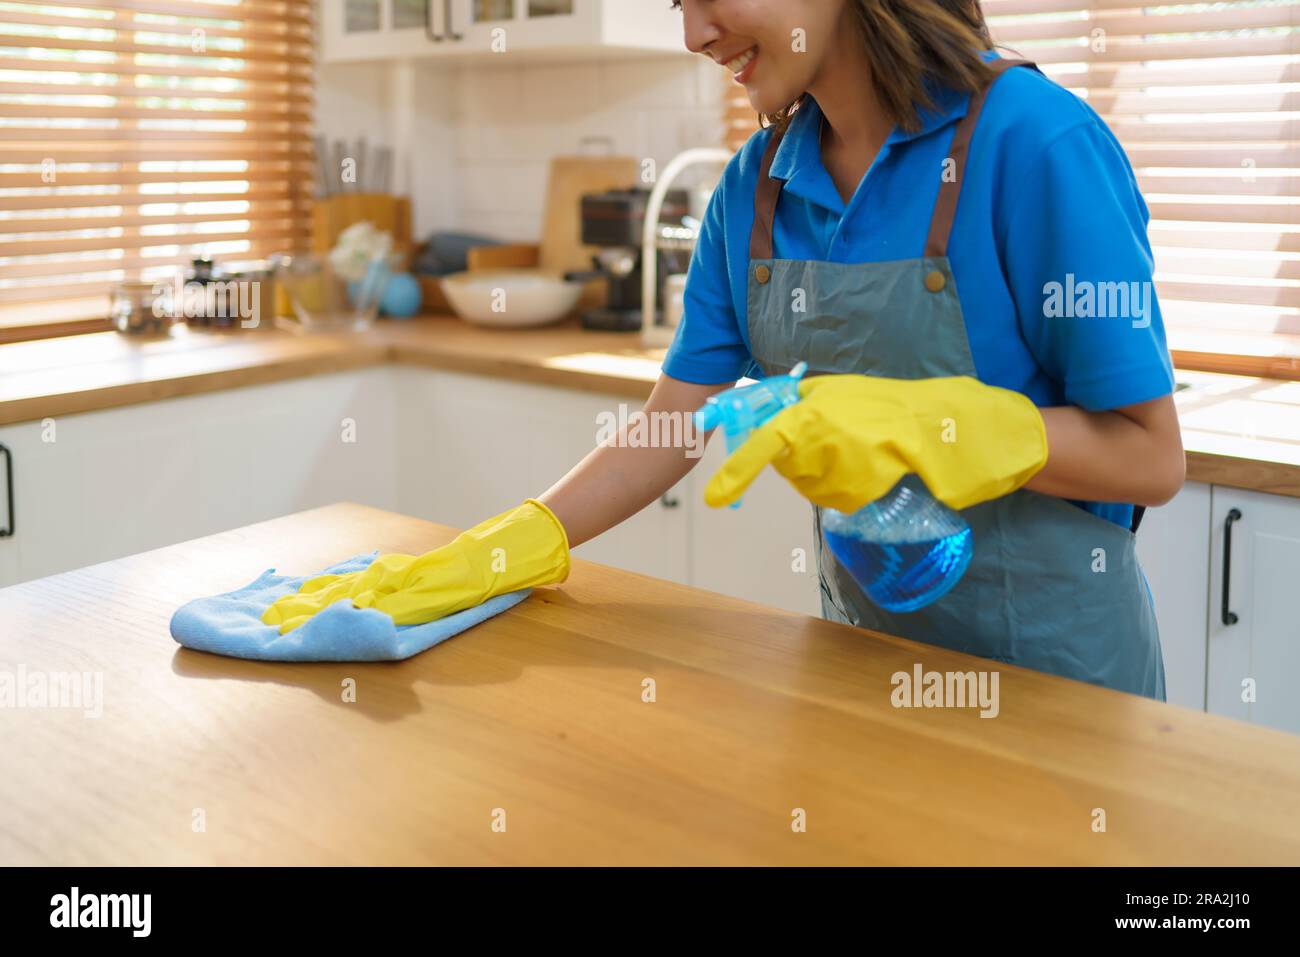 Une femme de ménage asiatique habile utilise sans effort une nappe et un pulvérisateur dans sa cuisine, démontrant son expertise dans la création d'un propre et accueillant s Banque D'Images